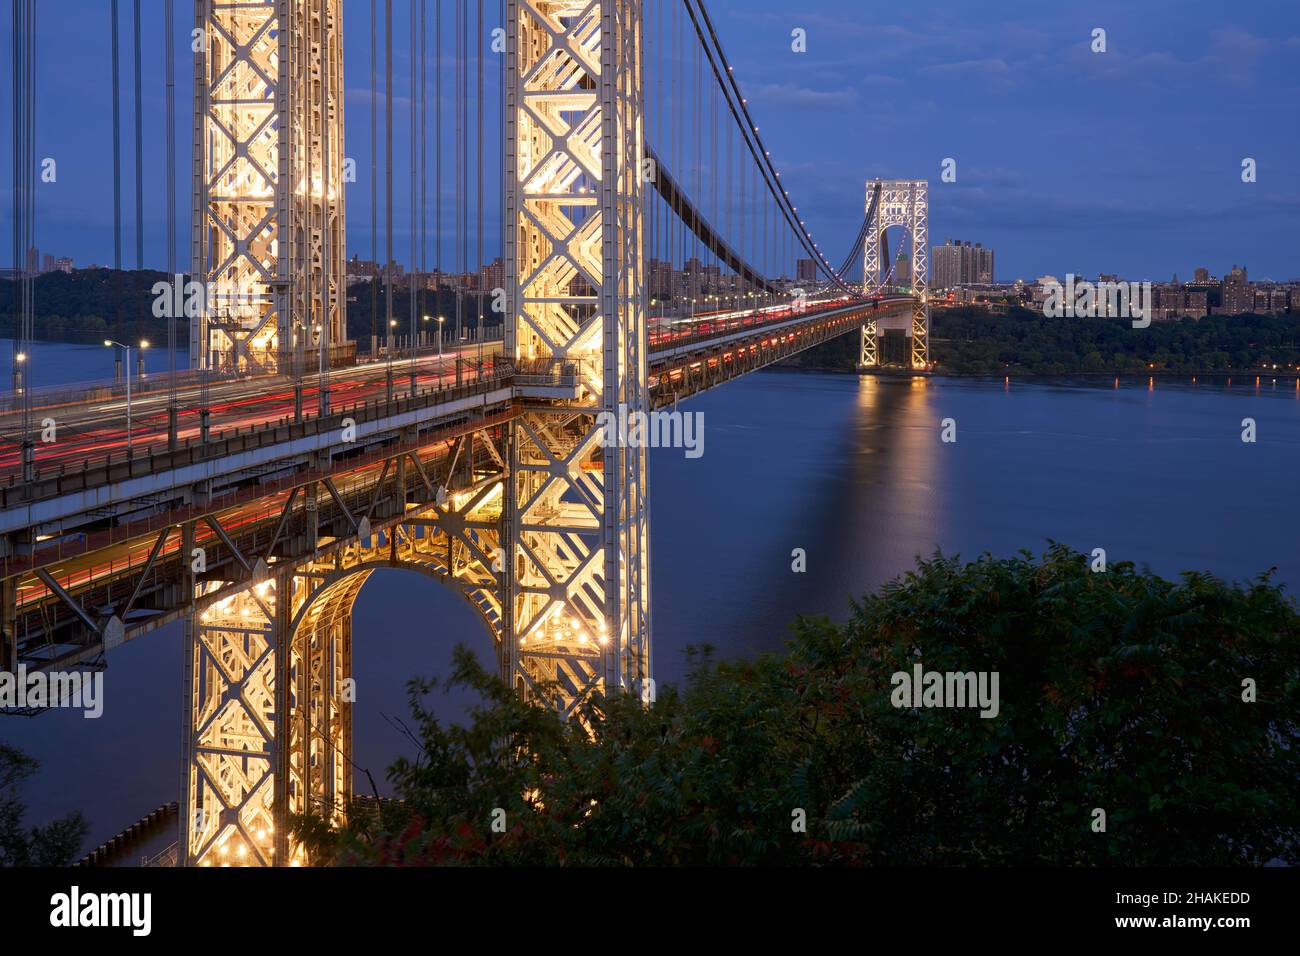 Le pont George Washington illuminé enjambant le fleuve Hudson en soirée.New York, Upper Manhattan.ÉTATS-UNIS Banque D'Images